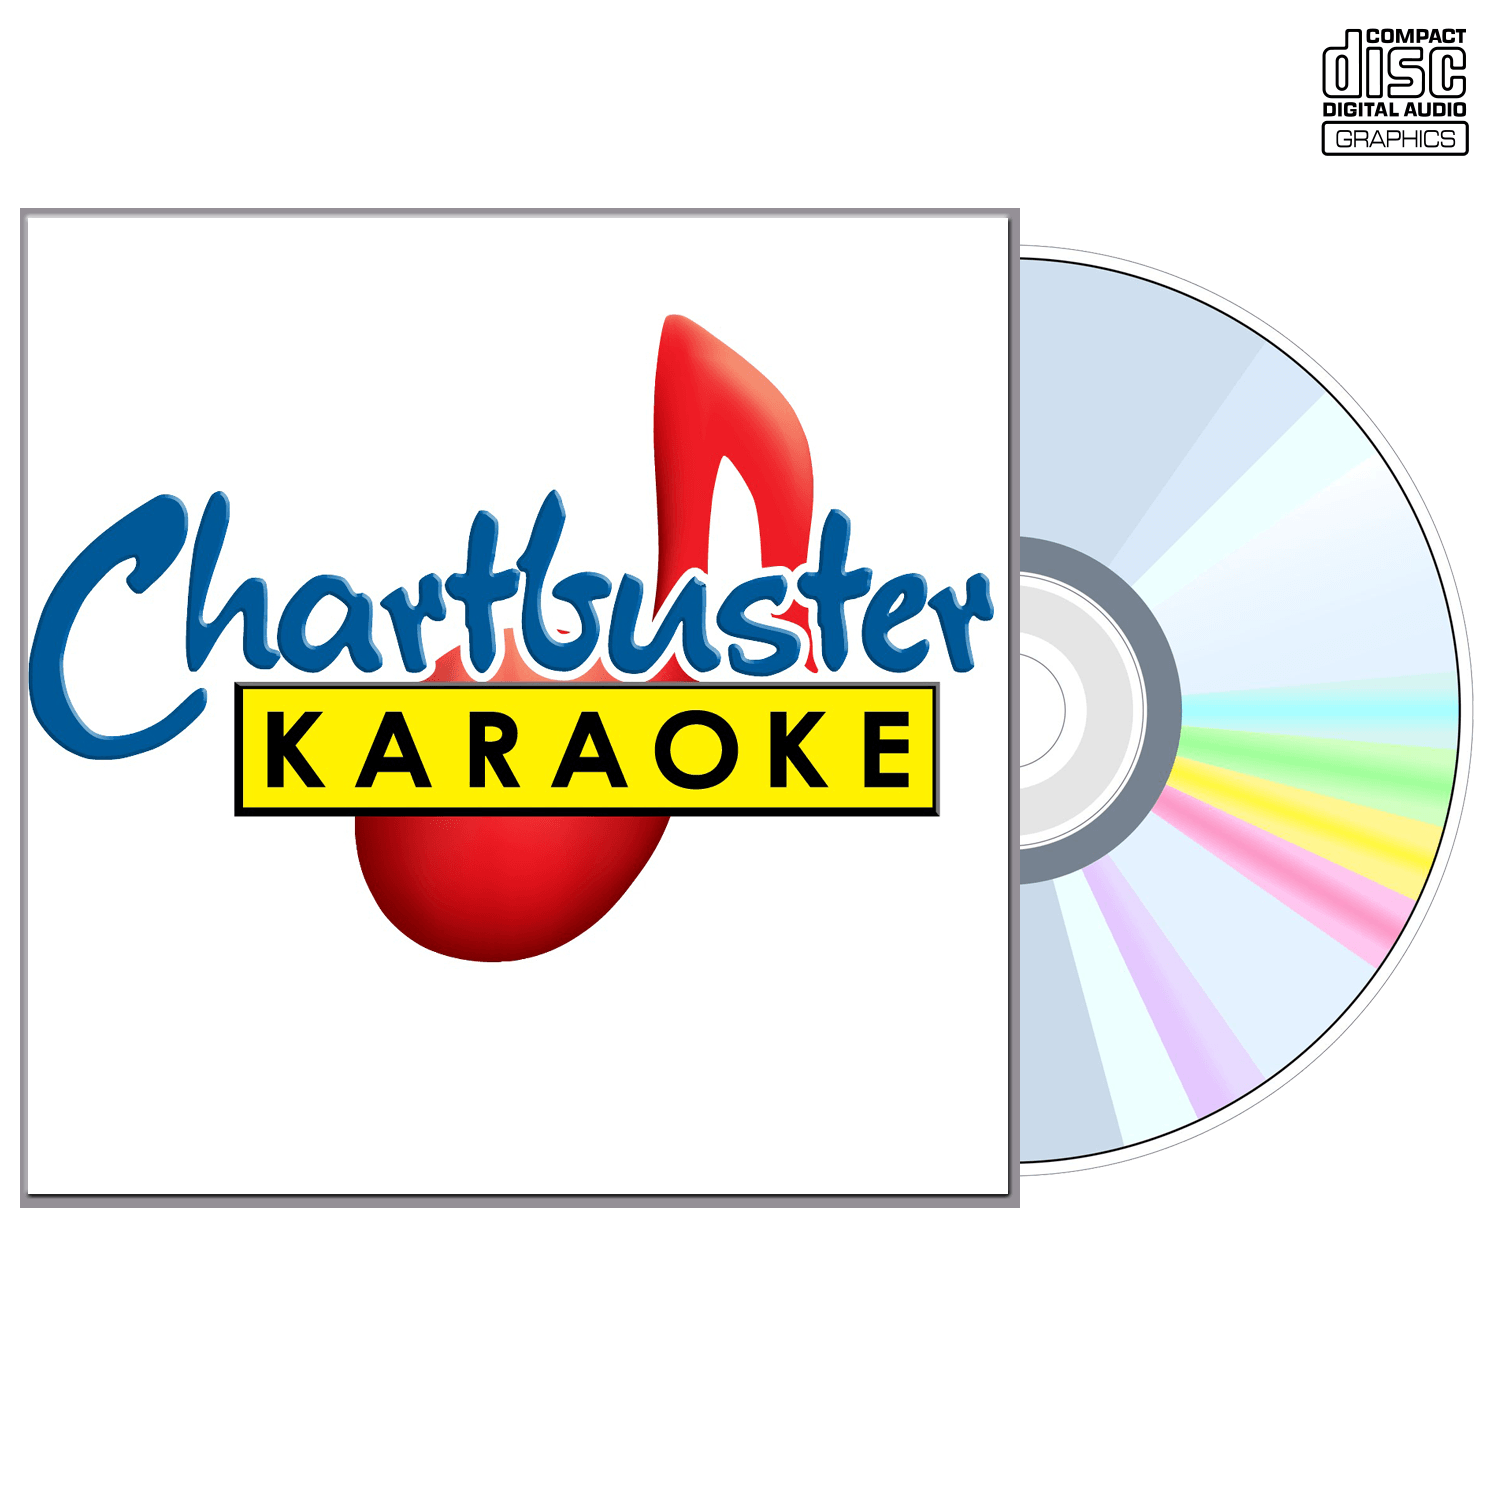 Jason Aldean - CD+G - Chartbuster Karaoke - Karaoke Home Entertainment